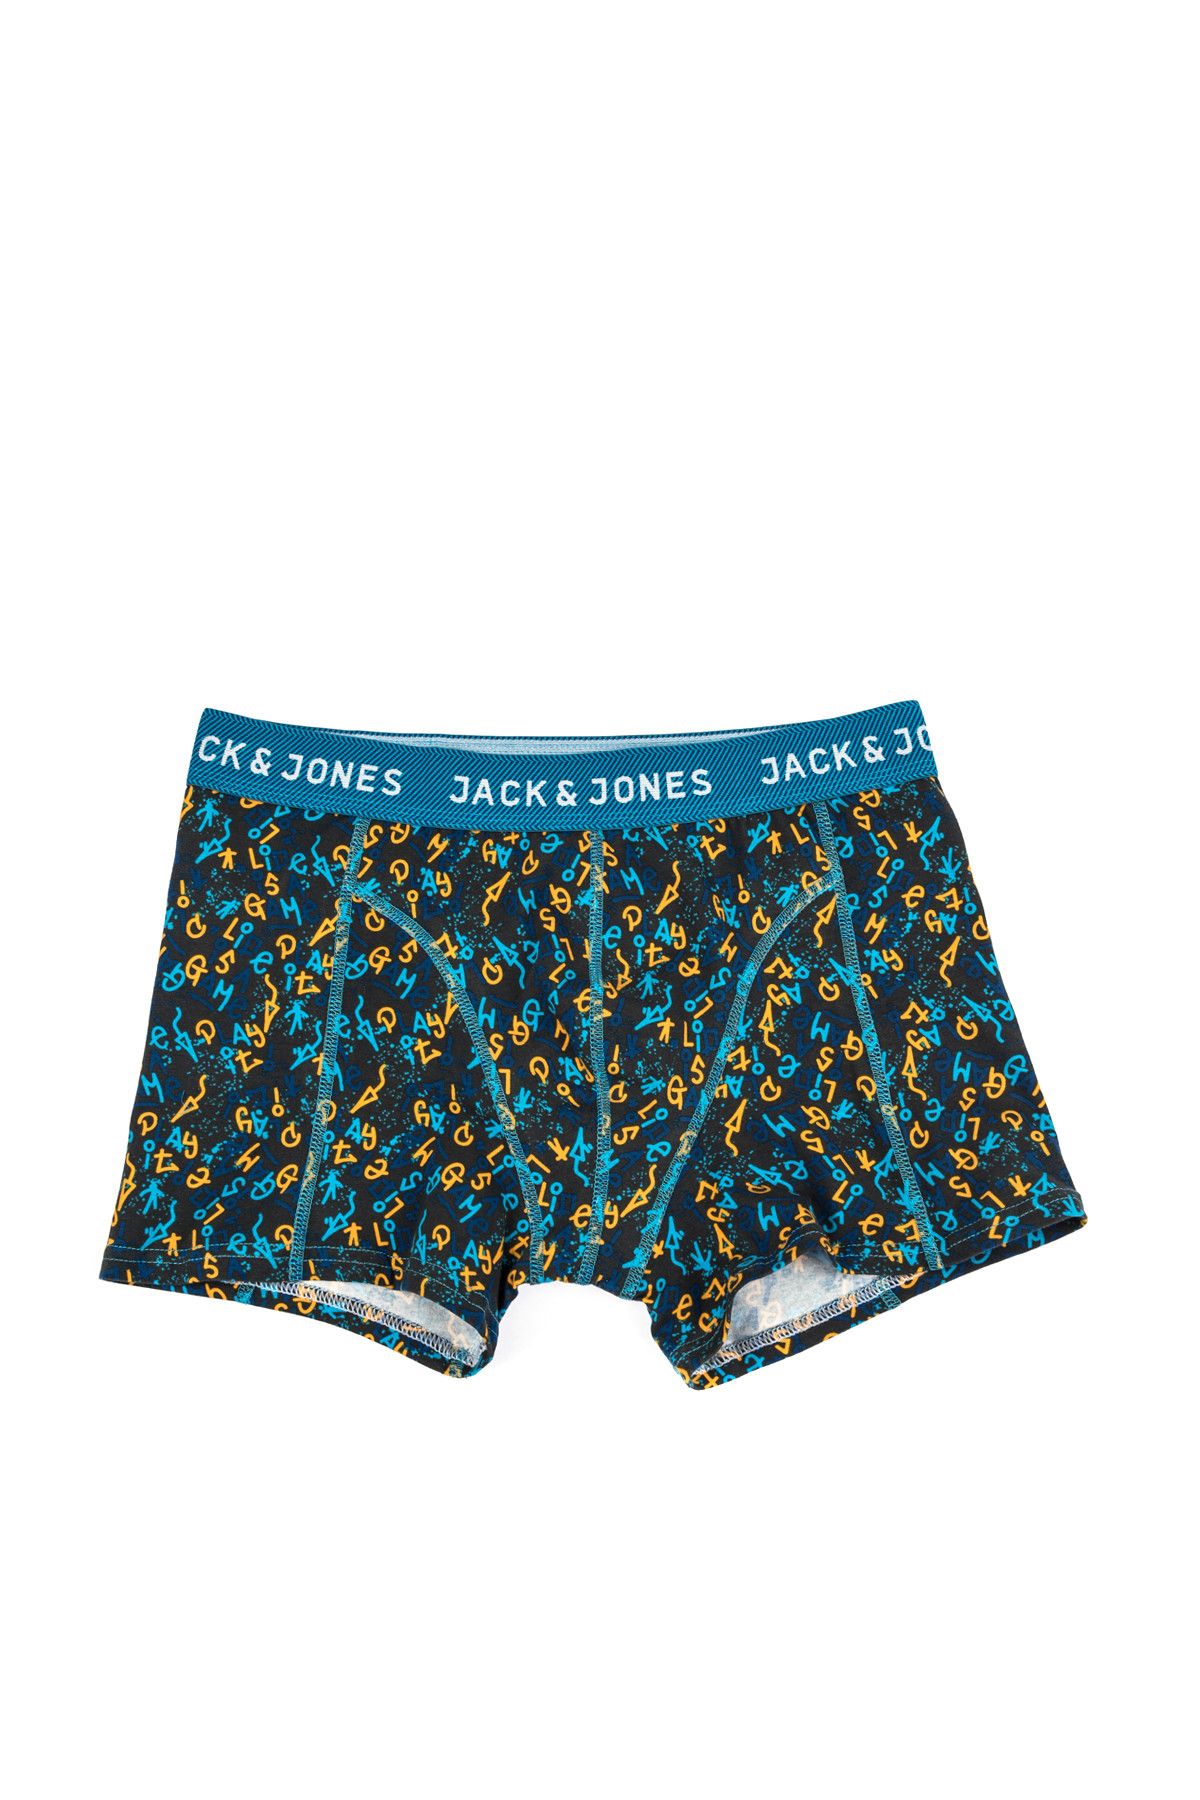 Jack & Jones Boxer - Hemut Trunks Noos-12131567